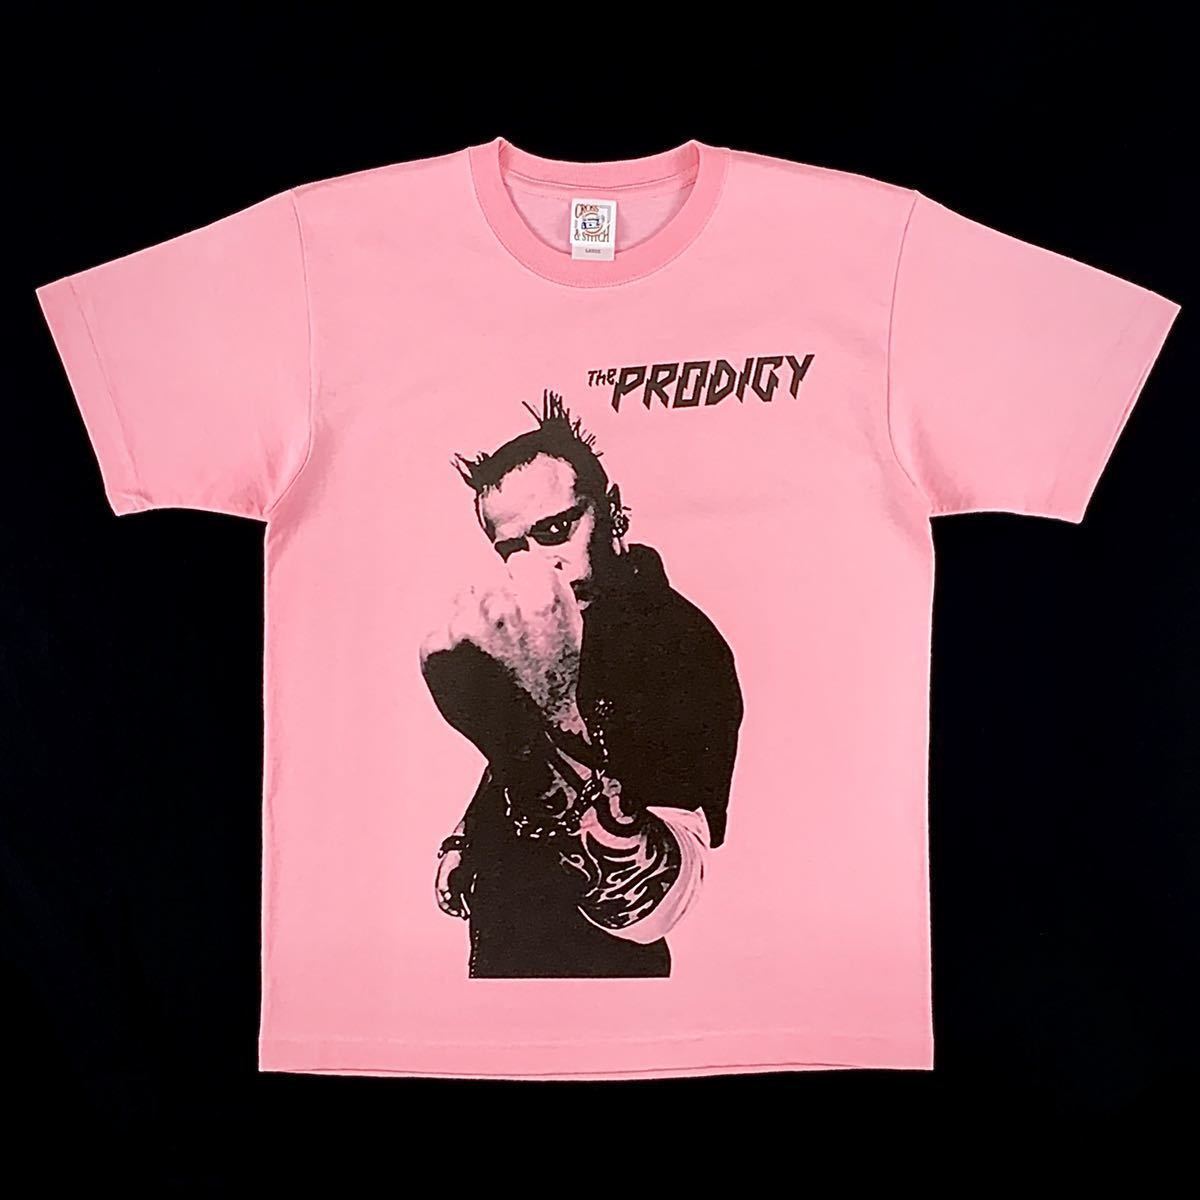 新品 ビッグ プリント & 大きい オーバー サイズ XXL 対応 THE PRODIGY プロディジー ニューレイヴ キース RIP ピンク Tシャツ パーカー 可